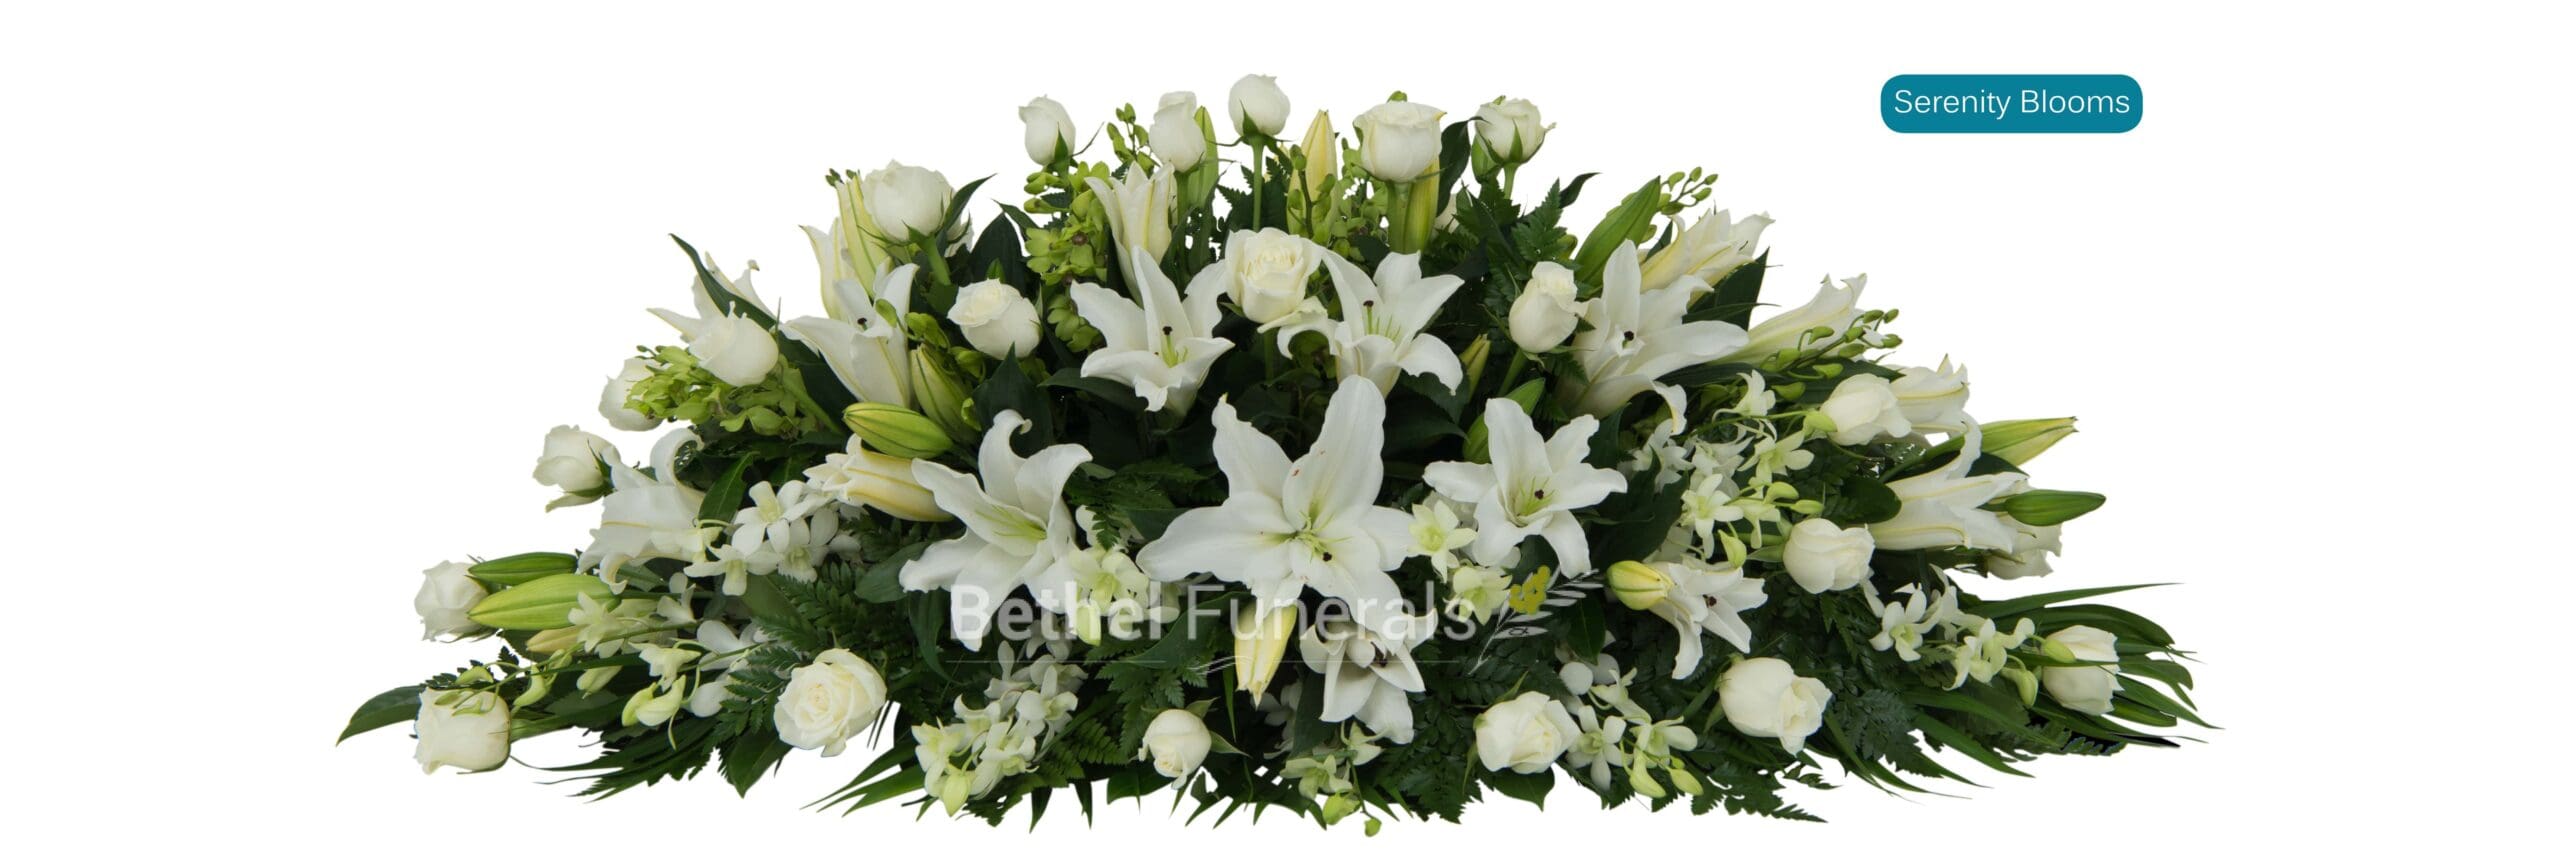 Serenity Blooms Funeral Flowers